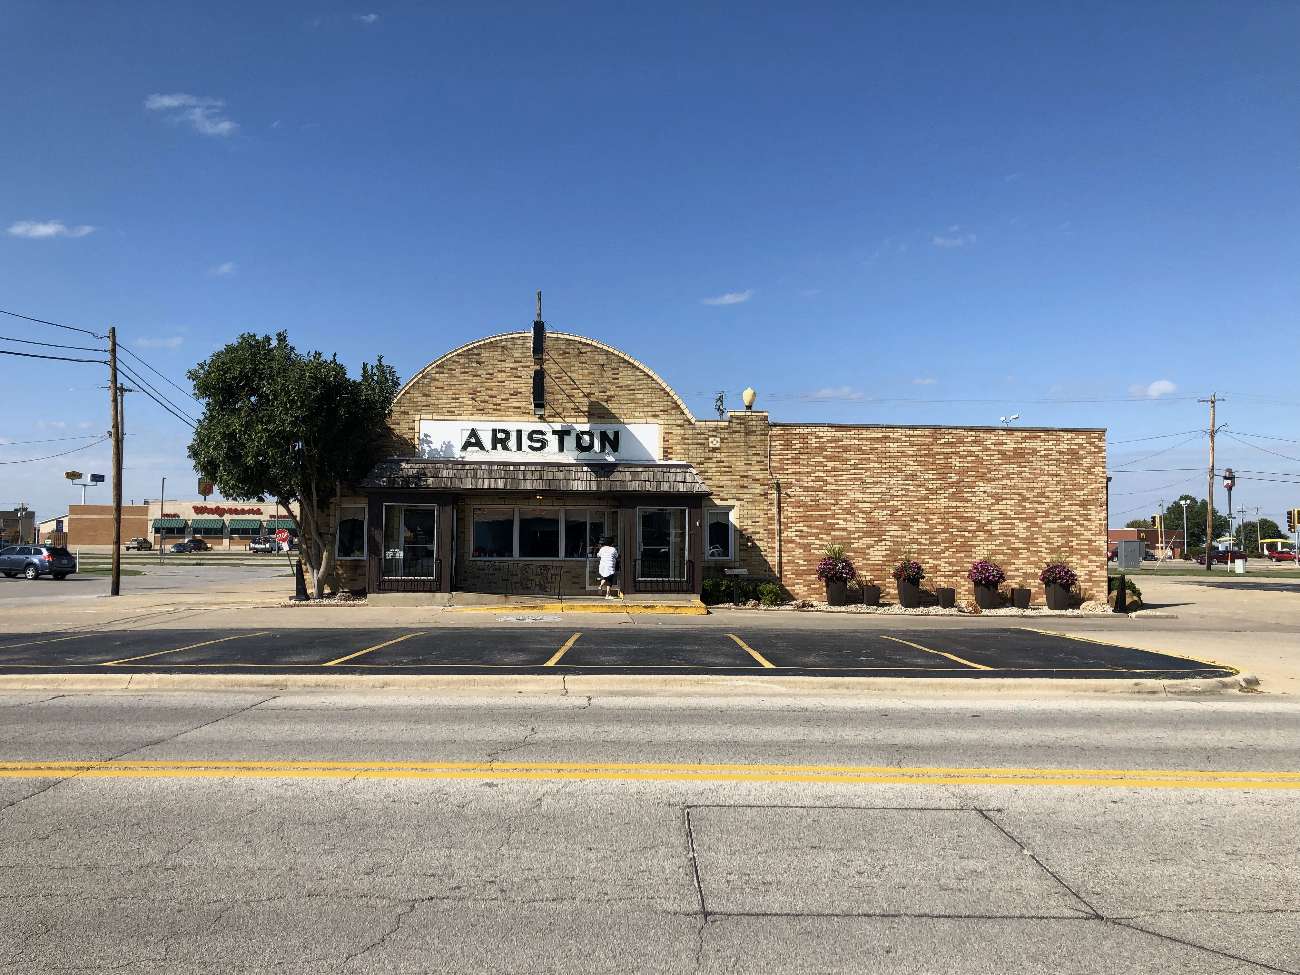 Die Bäckerei Ariston's gilt als das am längsten kontinuierlich geöffnete Lokal an der Route 66. Es befindet sich in Litchfield, Illinois.